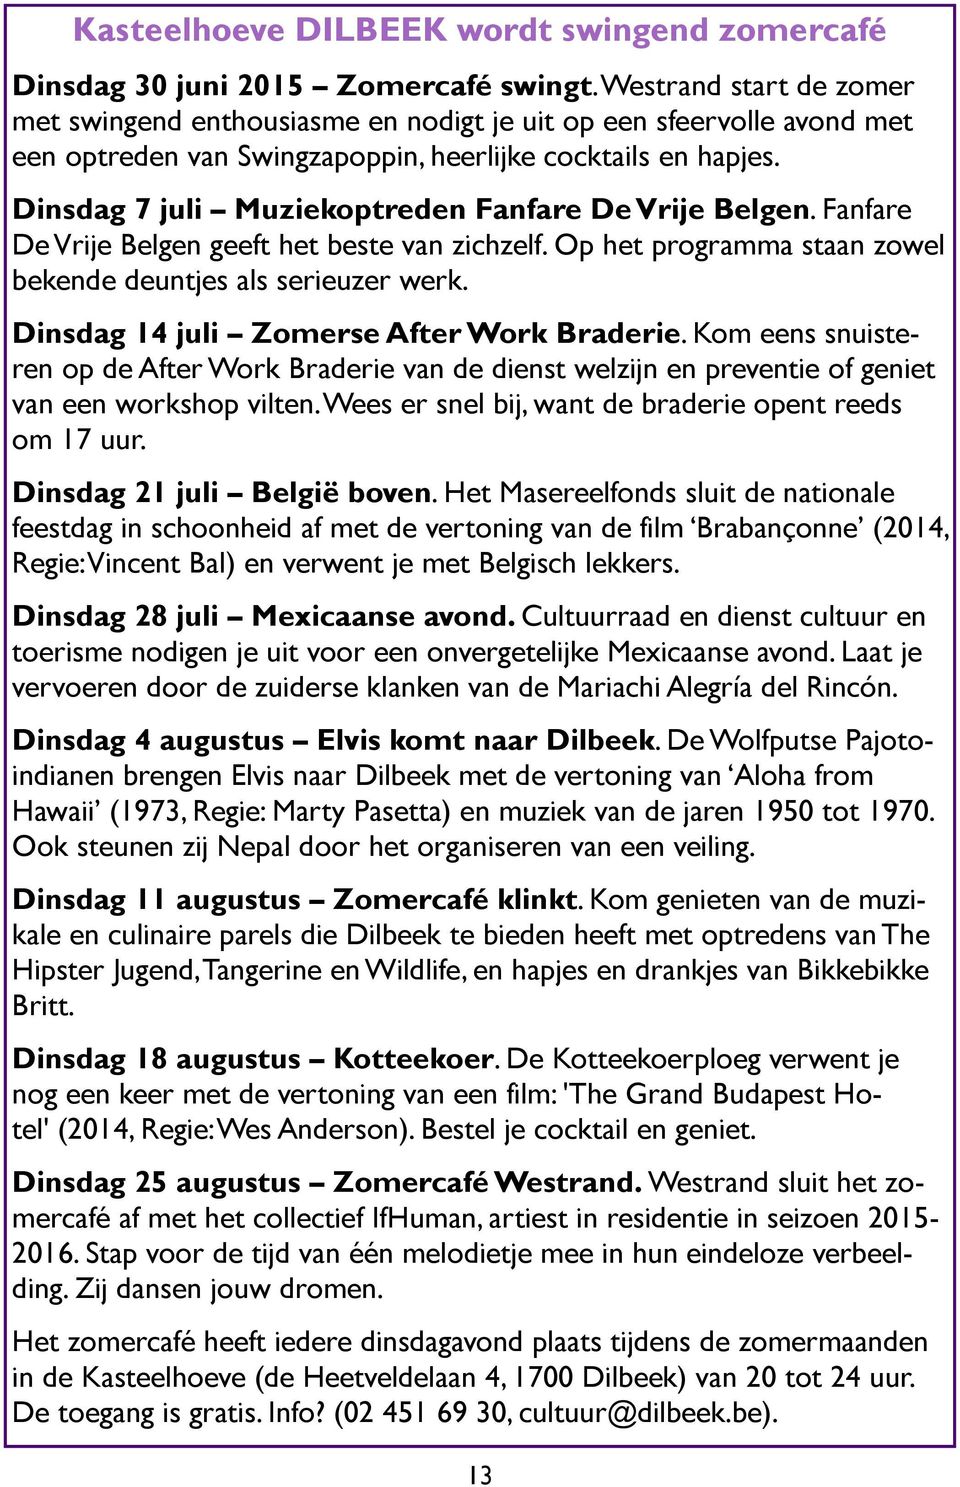 Dinsdag 7 juli Muziekoptreden Fanfare De Vrije Belgen. Fanfare De Vrije Belgen geeft het beste van zichzelf. Op het programma staan zowel bekende deuntjes als serieuzer werk.